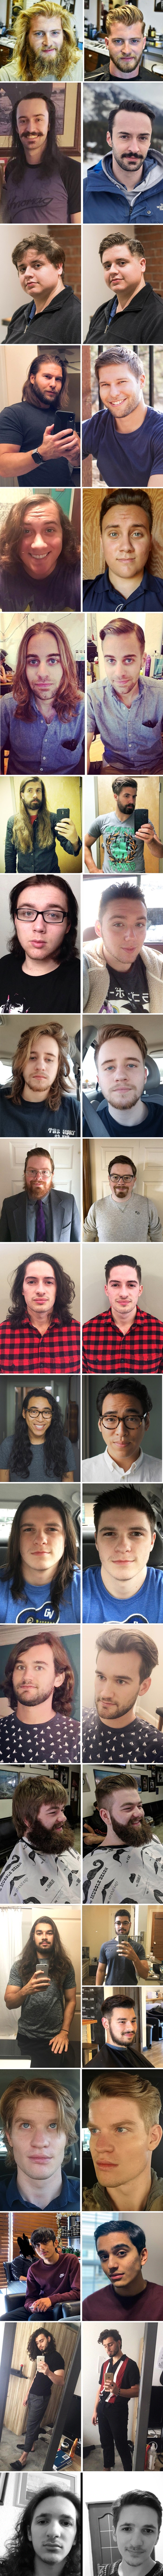 Ovi primjeri dokazuju da nove frizure zaista mogu promijeniti prvi dojam o osobi